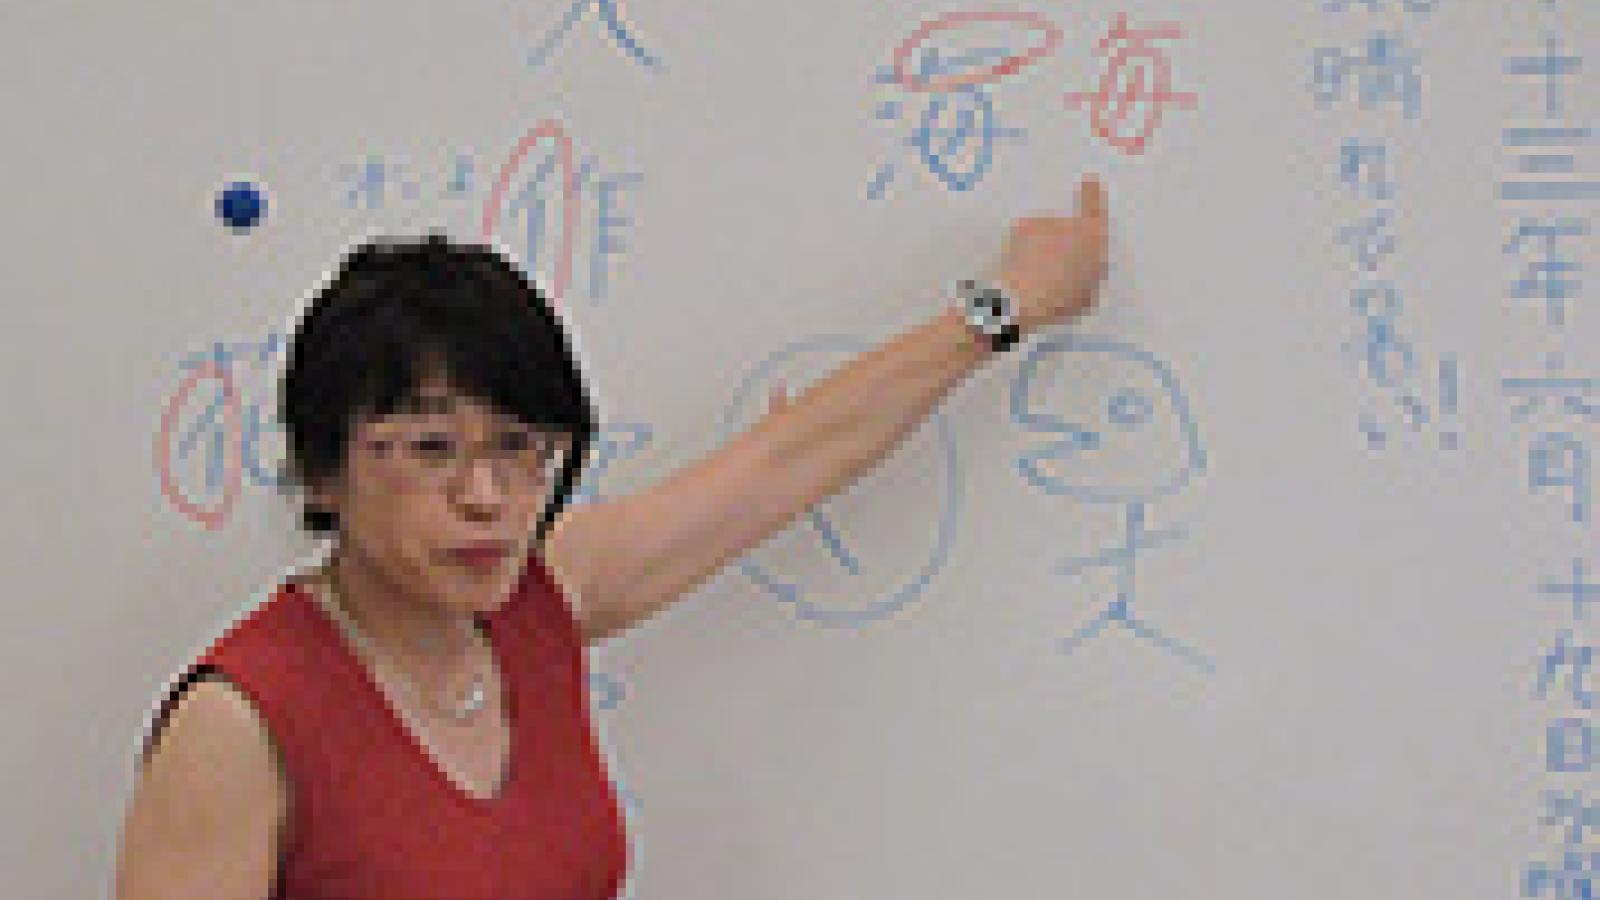 Japanese teacher on whiteboard